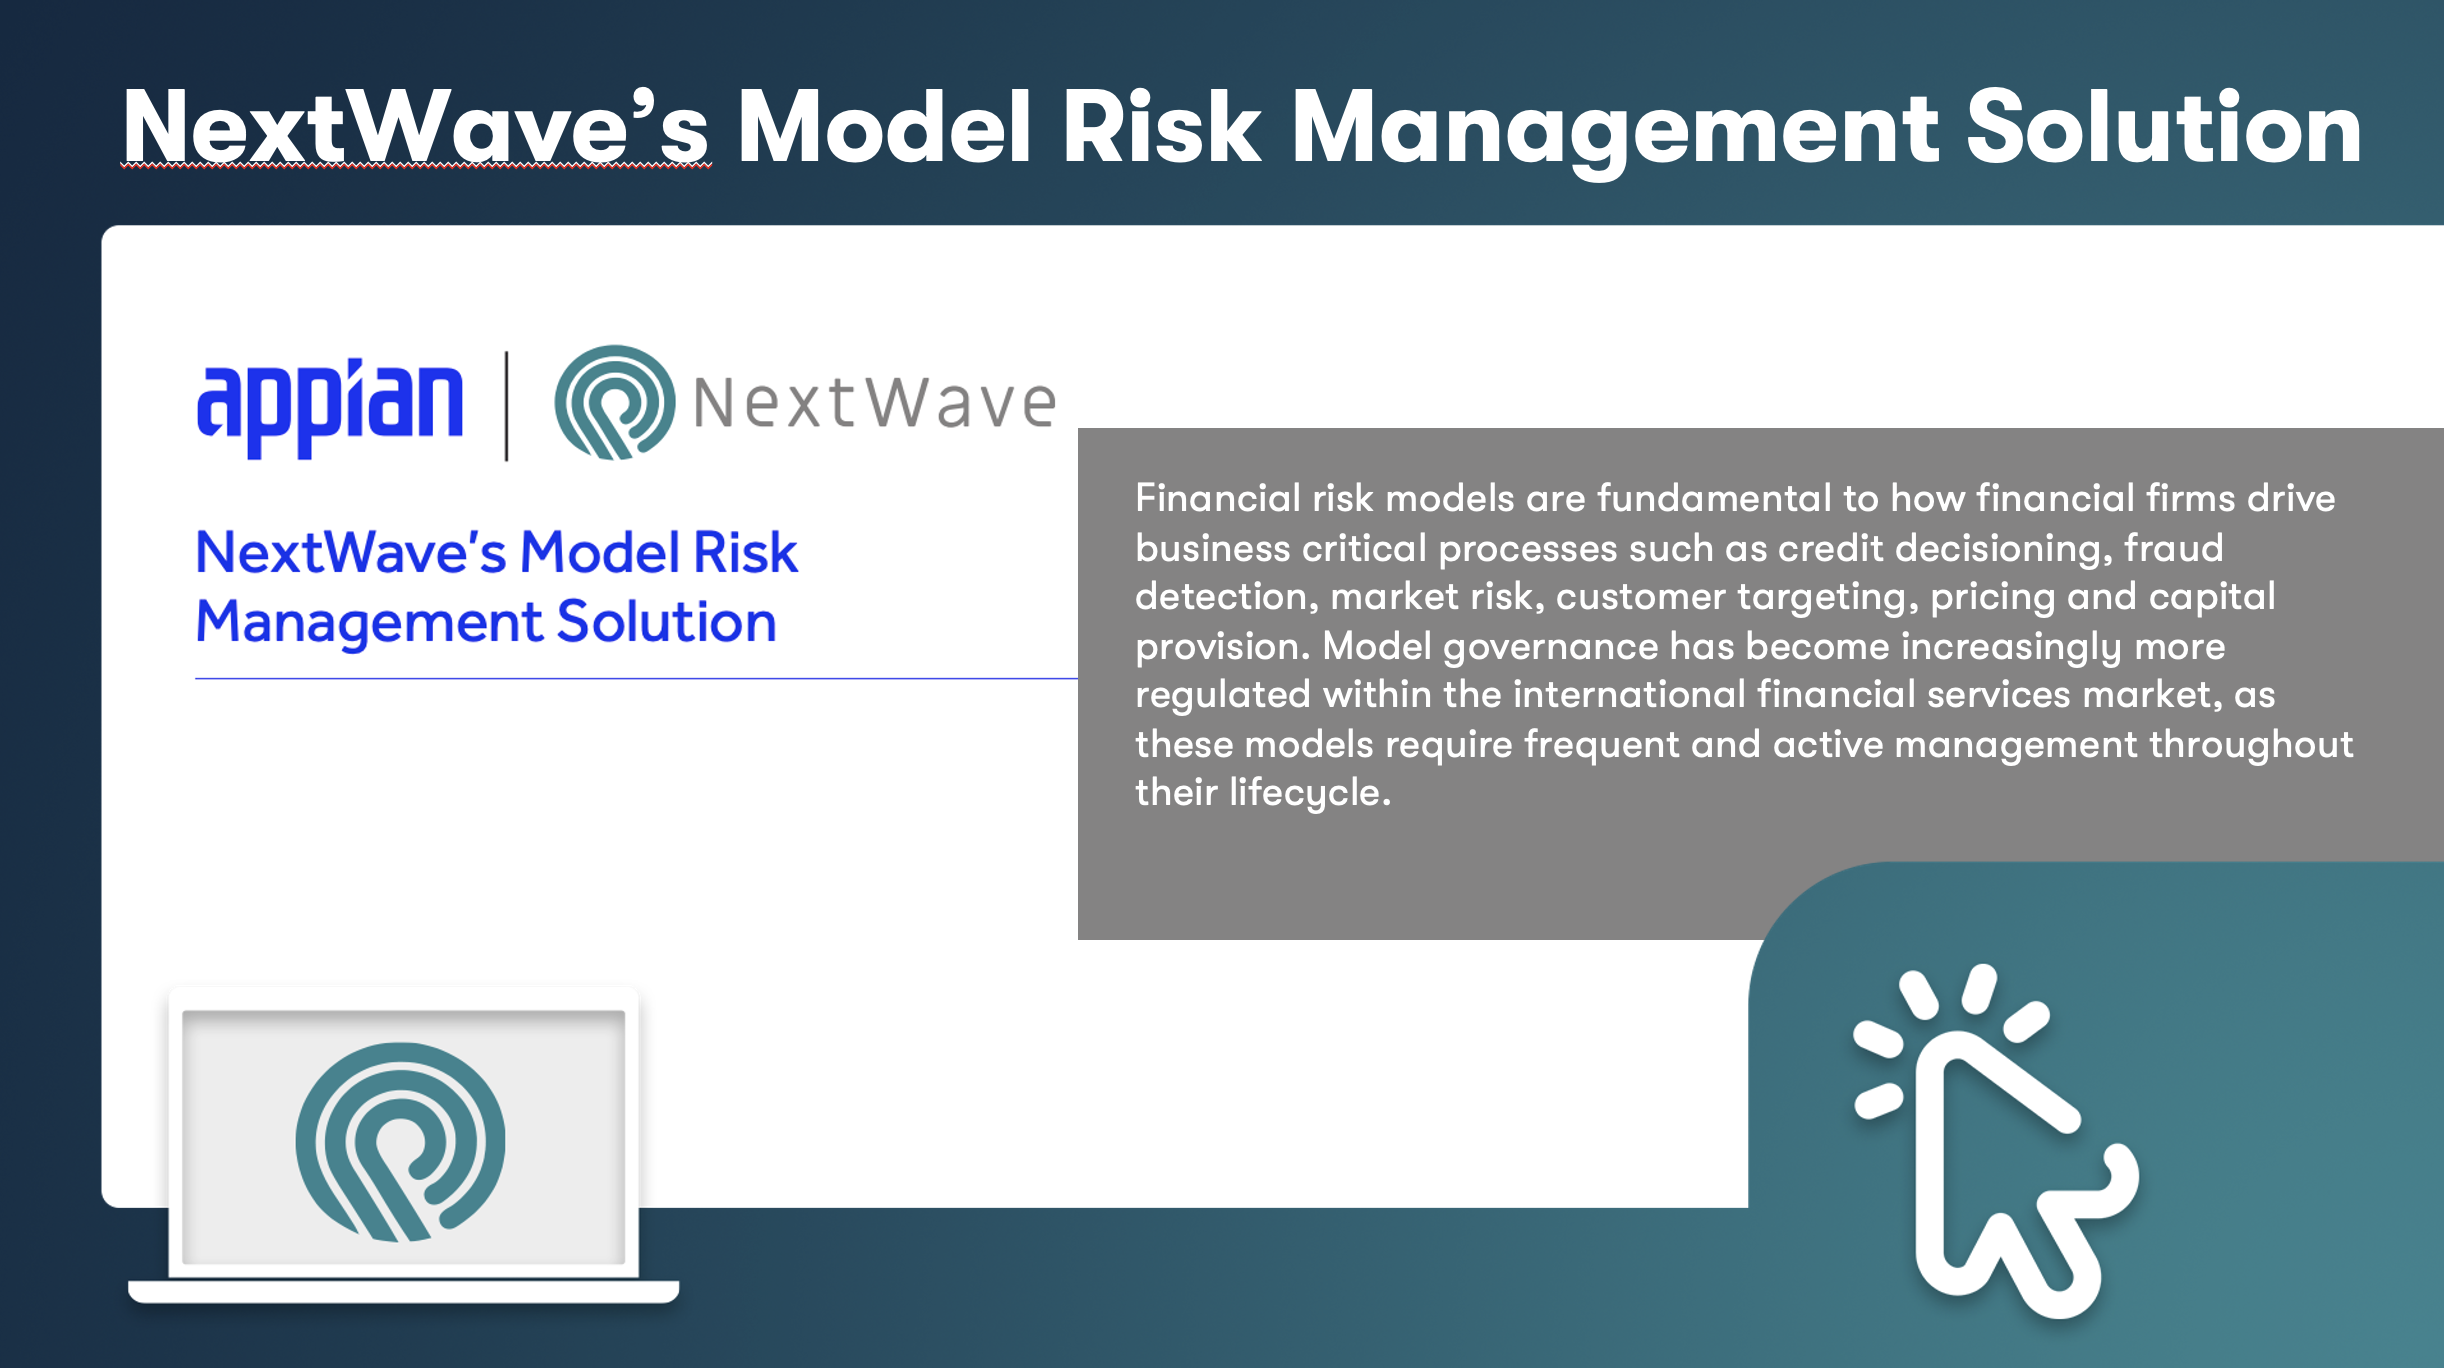 NextWave’s Model Risk Management Solution